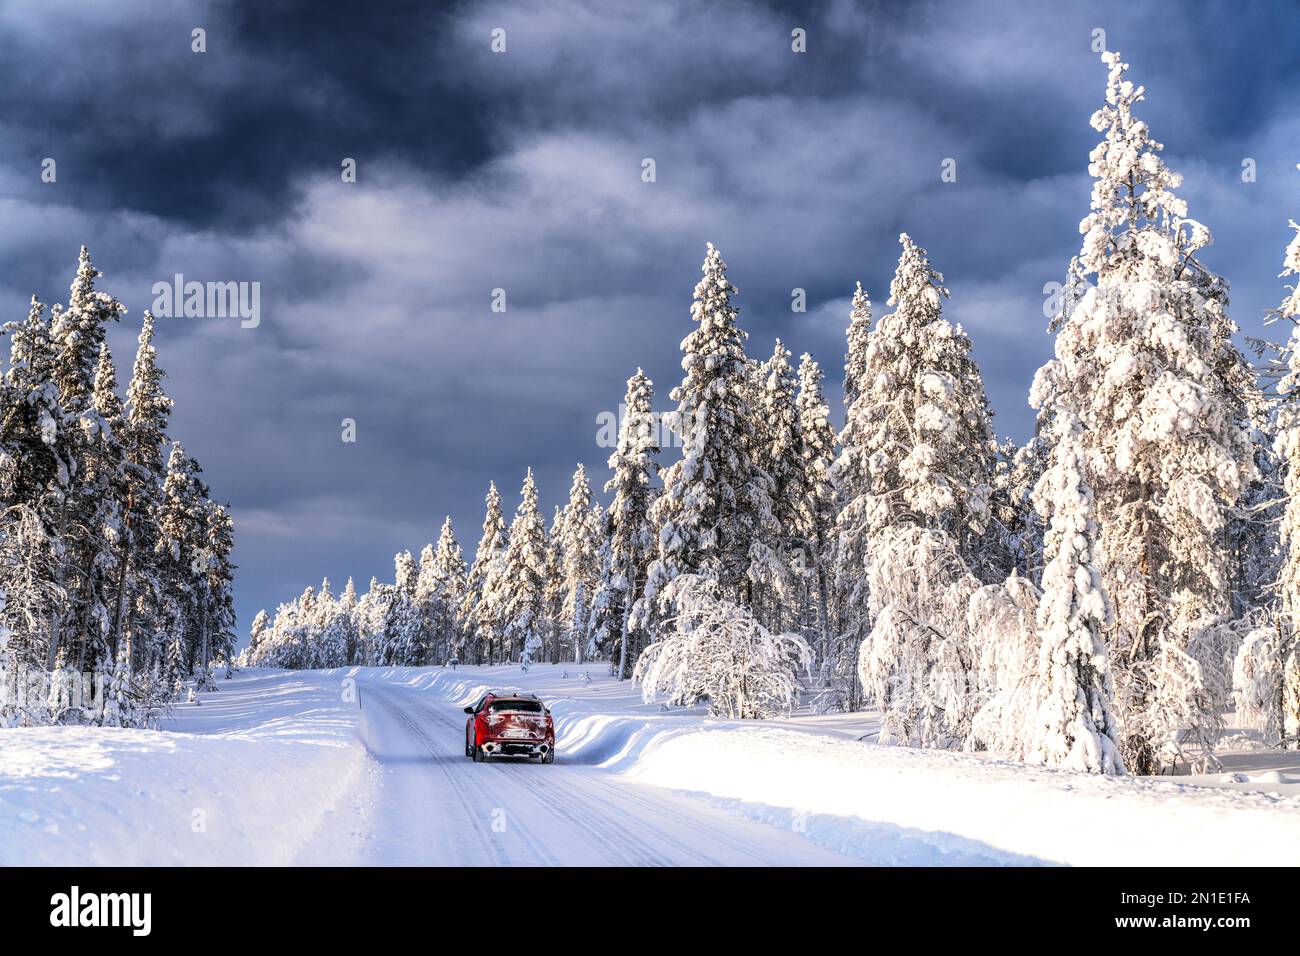 Voiture sur route glissante entourée d'arbres enneigés dans une forêt gelée, Kangos, Comté de Norrbotten, Laponie, Suède, Scandinavie, Europe Banque D'Images